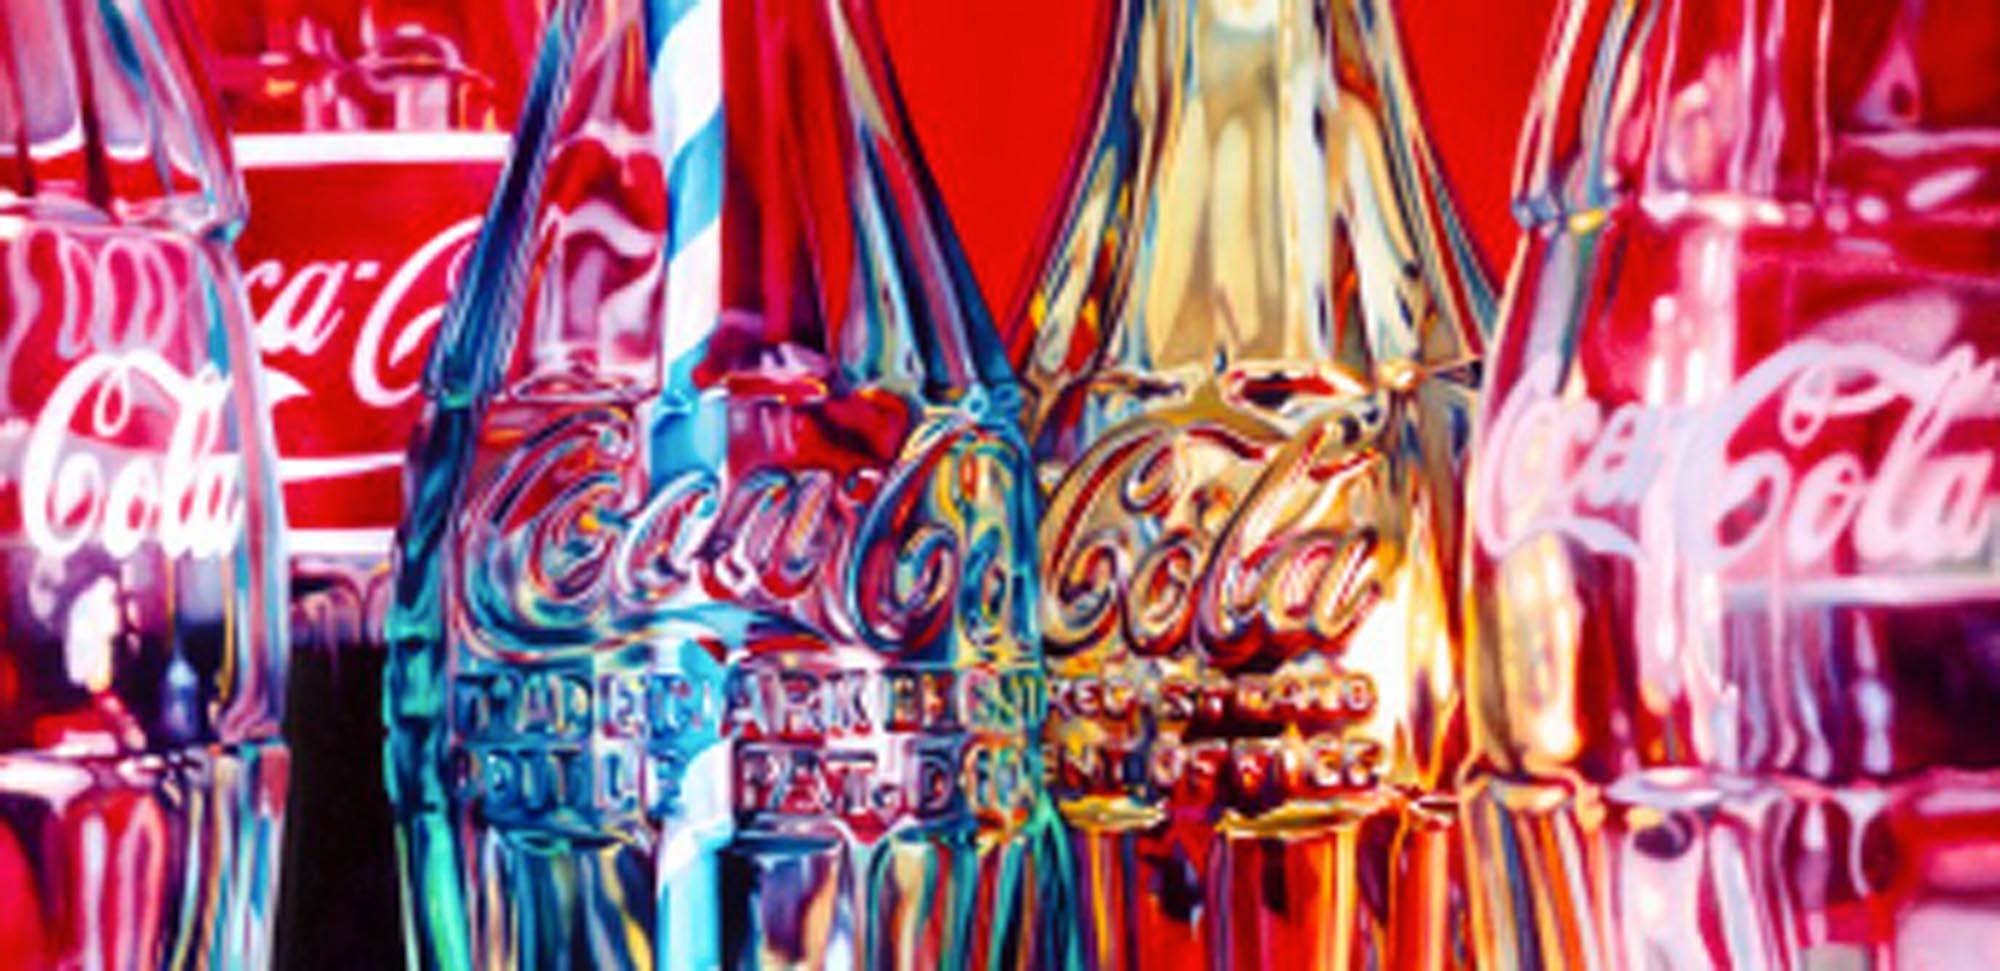 I Colon et paille rayée, nature morte pop art sérigraphie rouge, art coca cola - Print de Kate Brinkworth